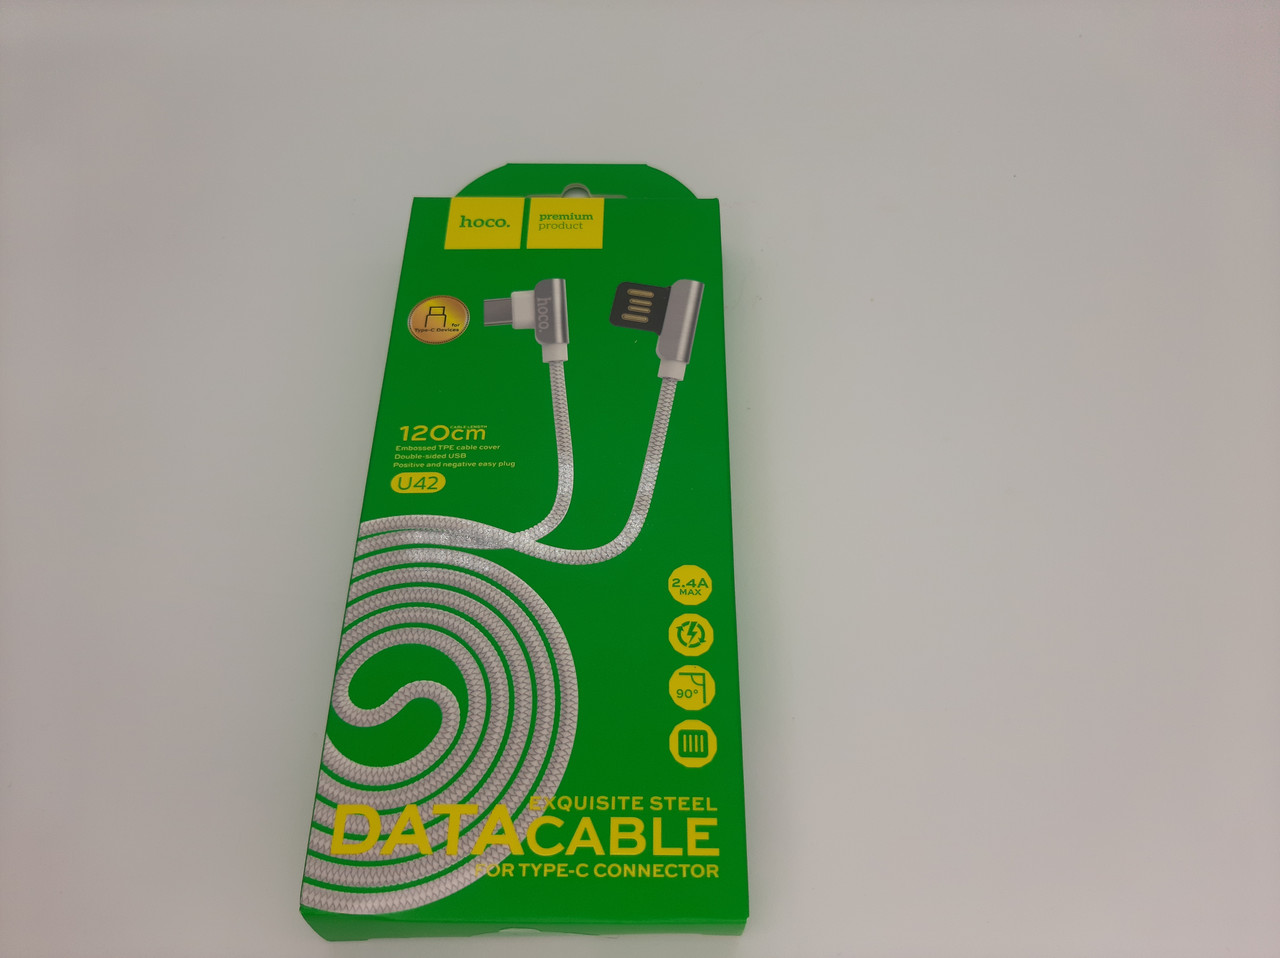 USB-кабель HOCO U42 "Exquisite steel" Type-C (1.2М) (білий), фото 1